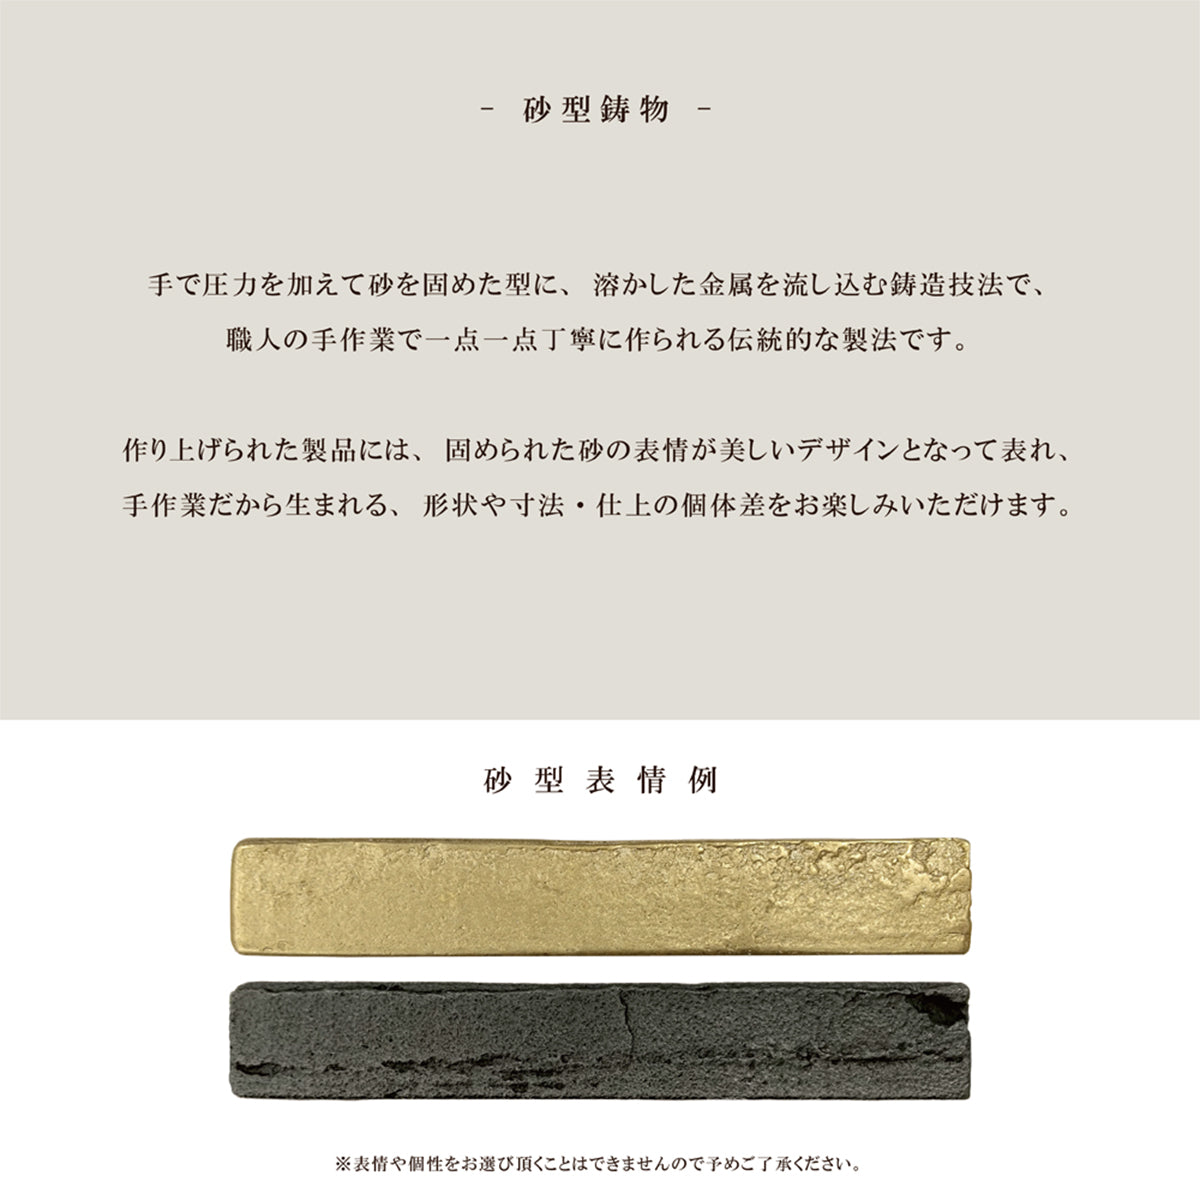 Brass Casting 真鍮鋳物 ハンドル (大コの字 真鍮色 HB-203)